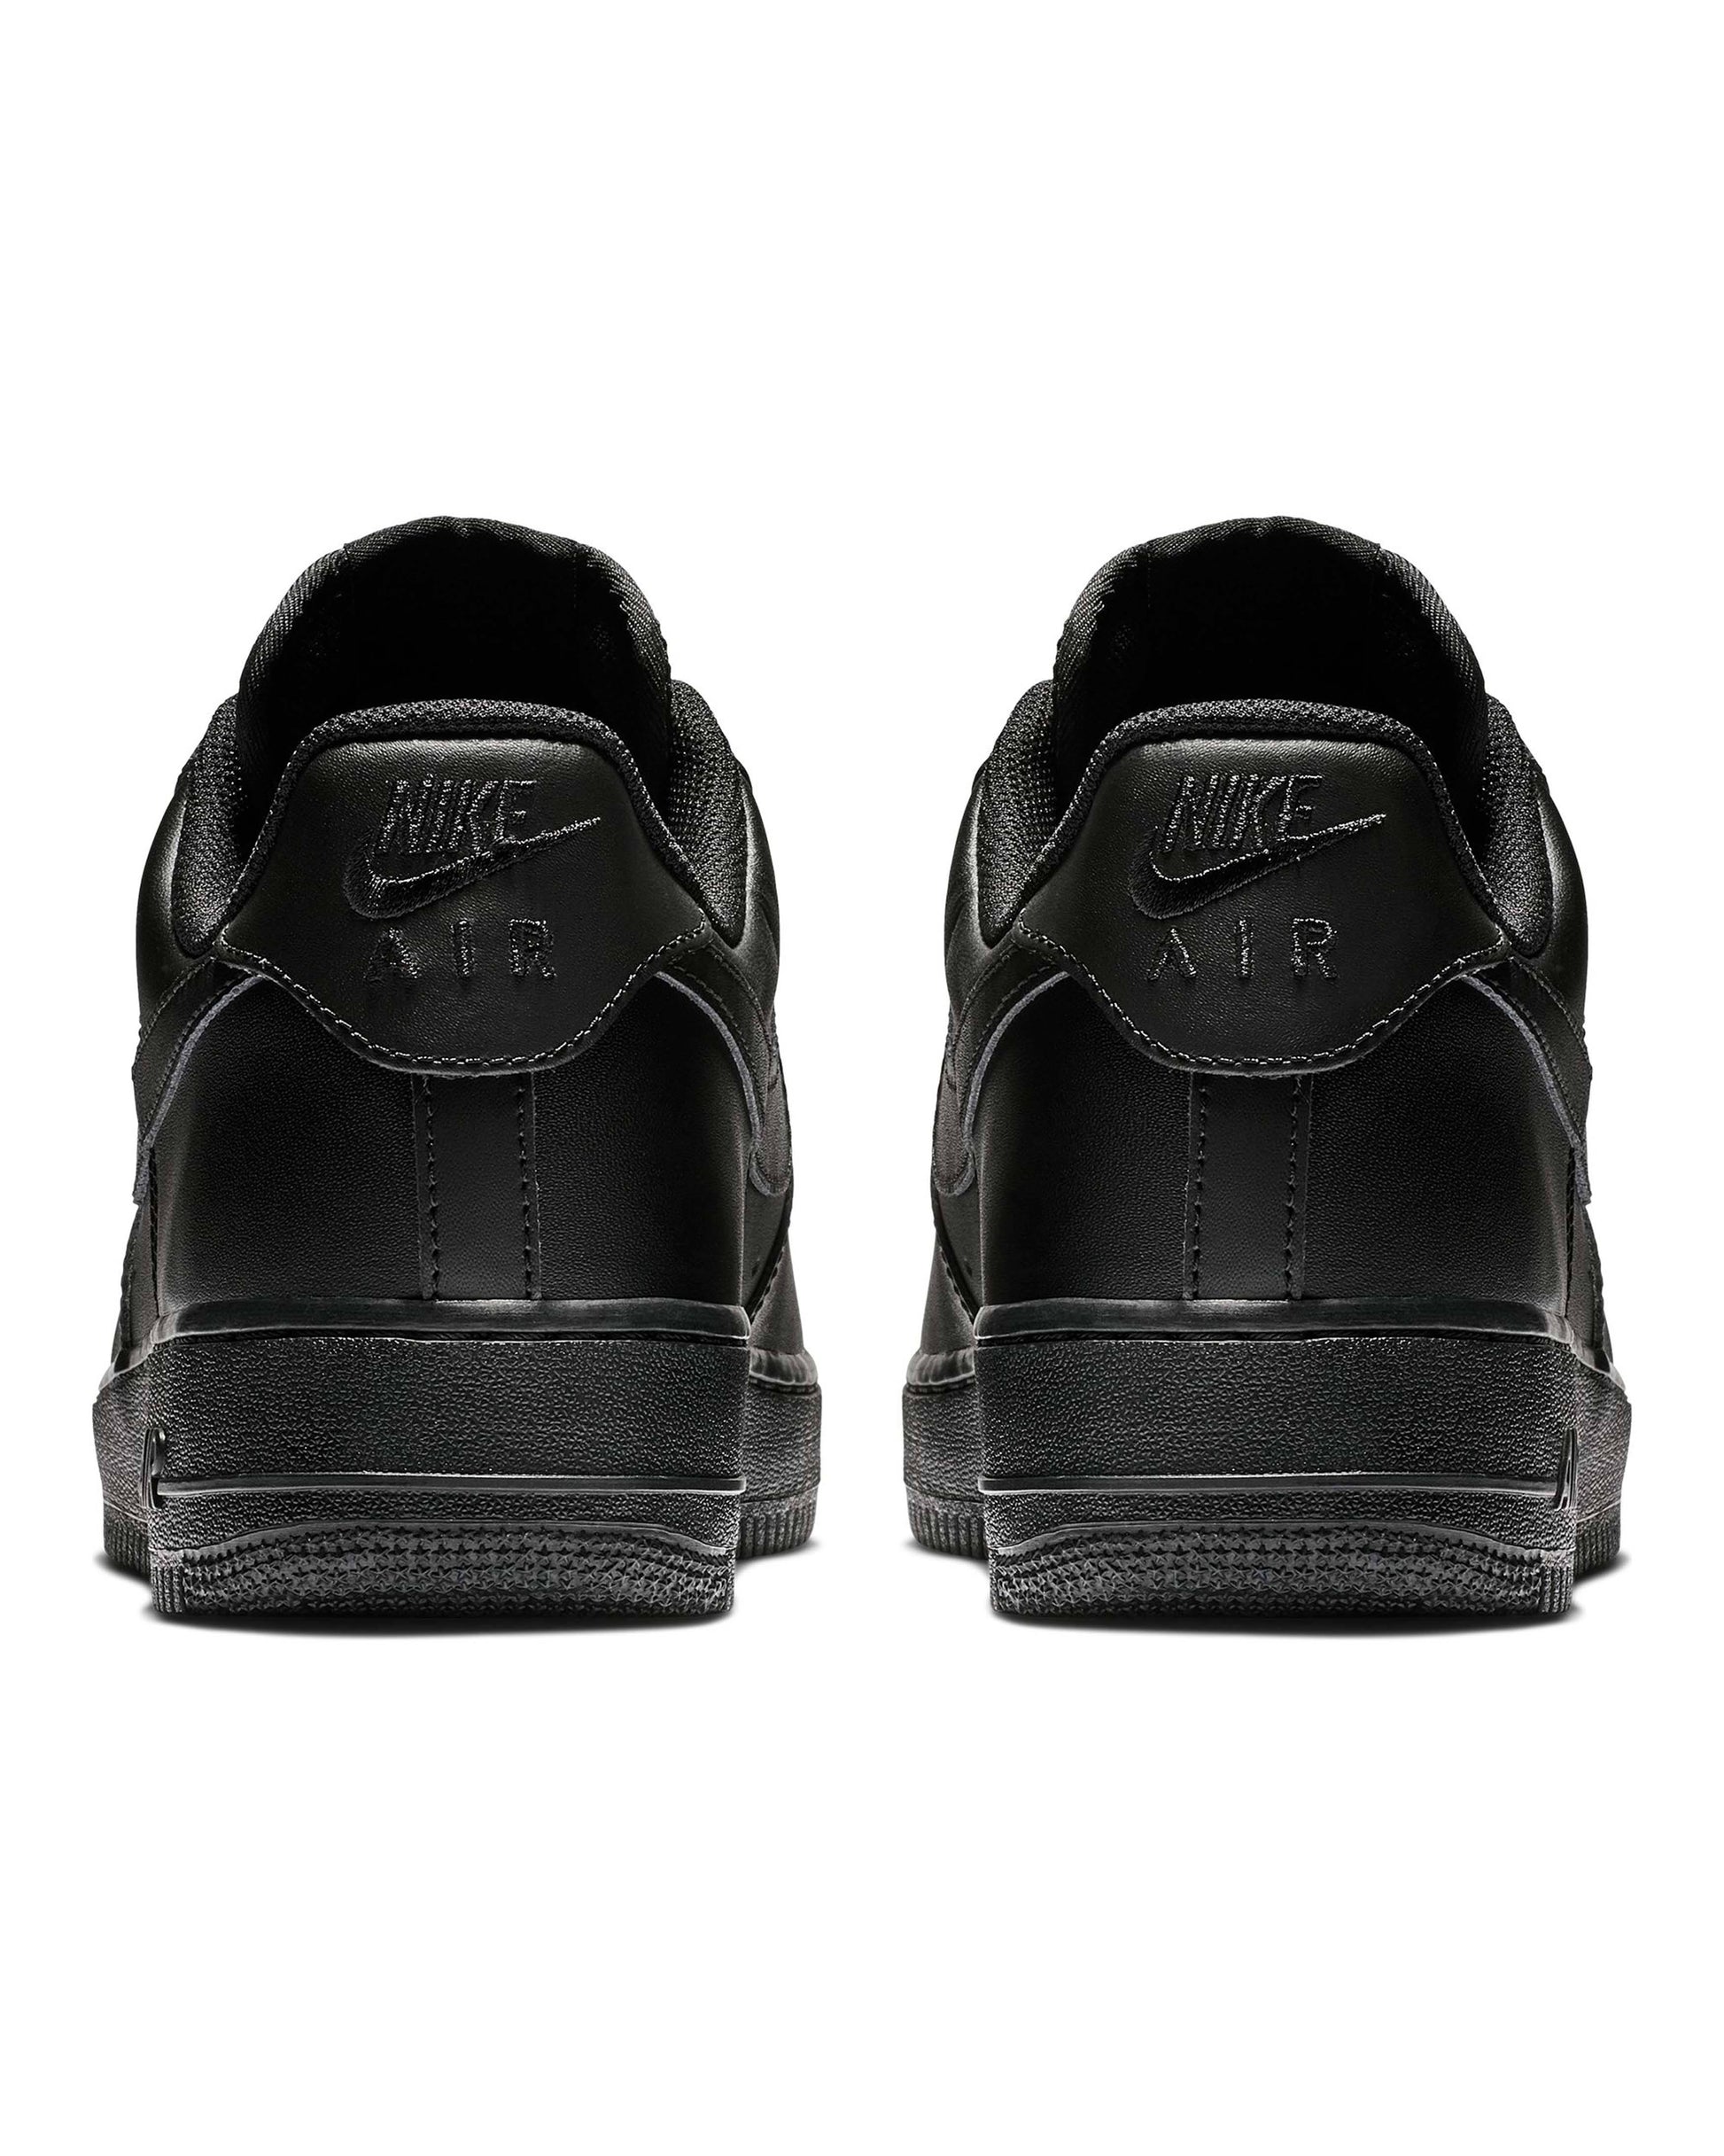 Nike Air Force 1 LE GS Triple Black